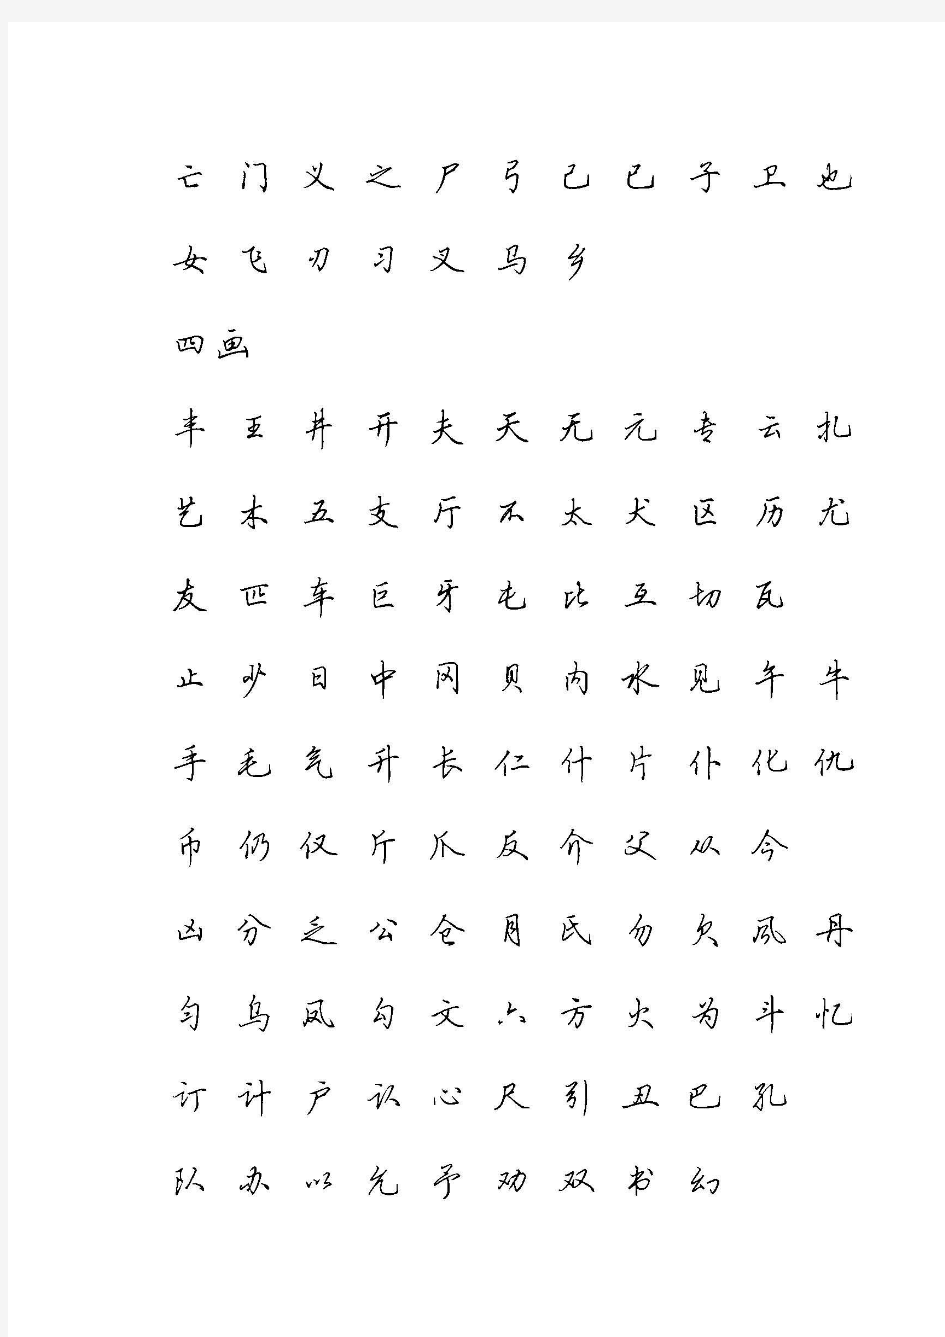 硬笔行书现代汉语3500常用字字帖